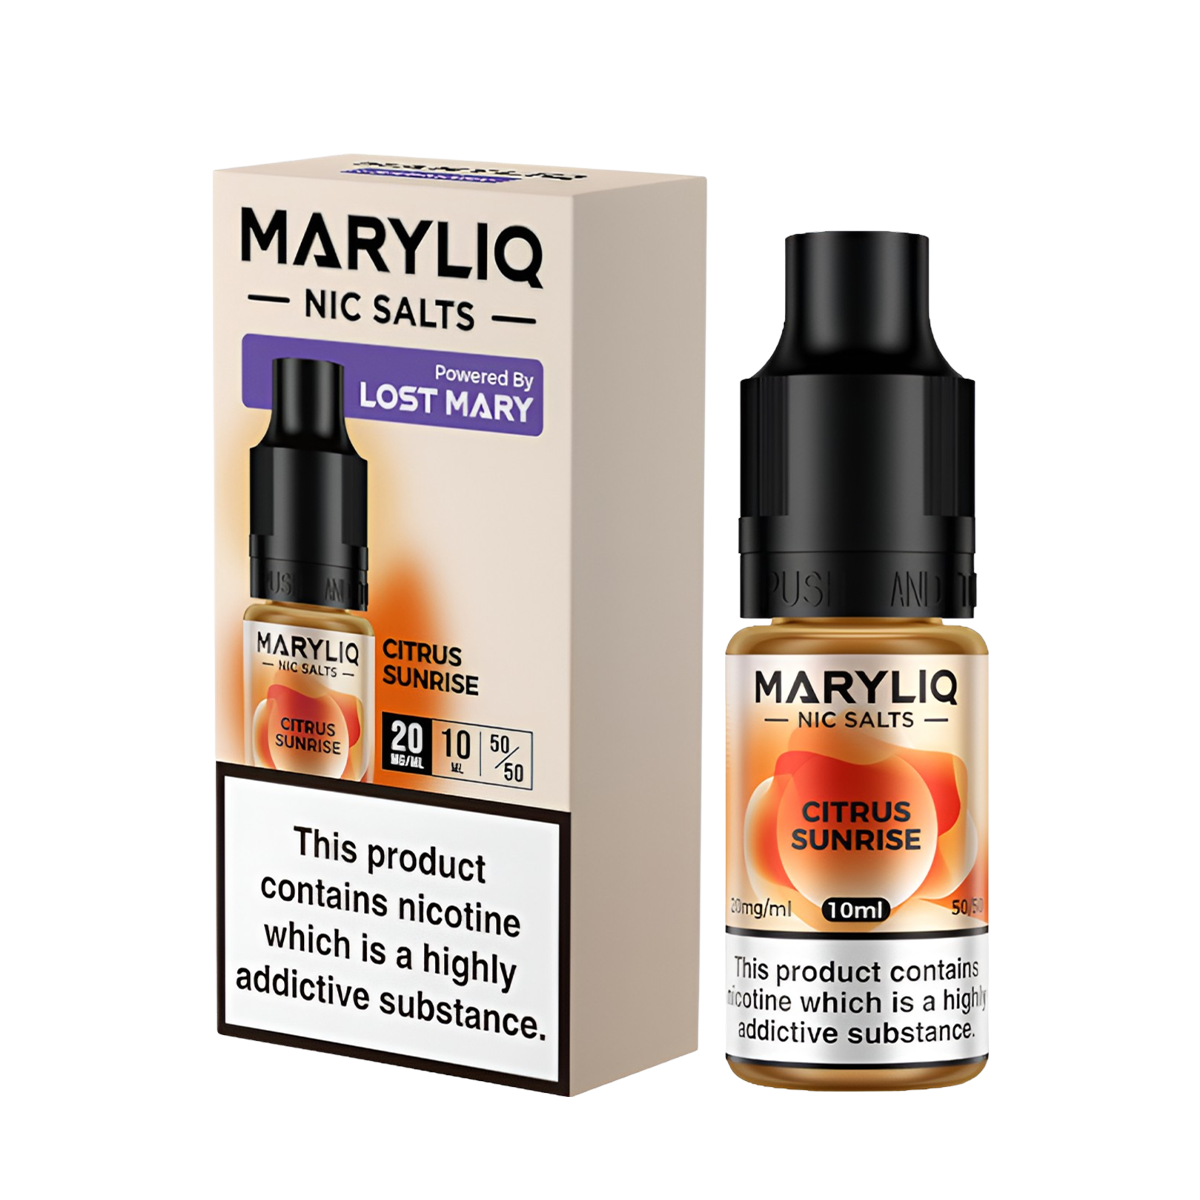 Lost Mary Maryliq Salt Nicotine Vape Juice 20 Mg 10 Ml Citrus Sunrise